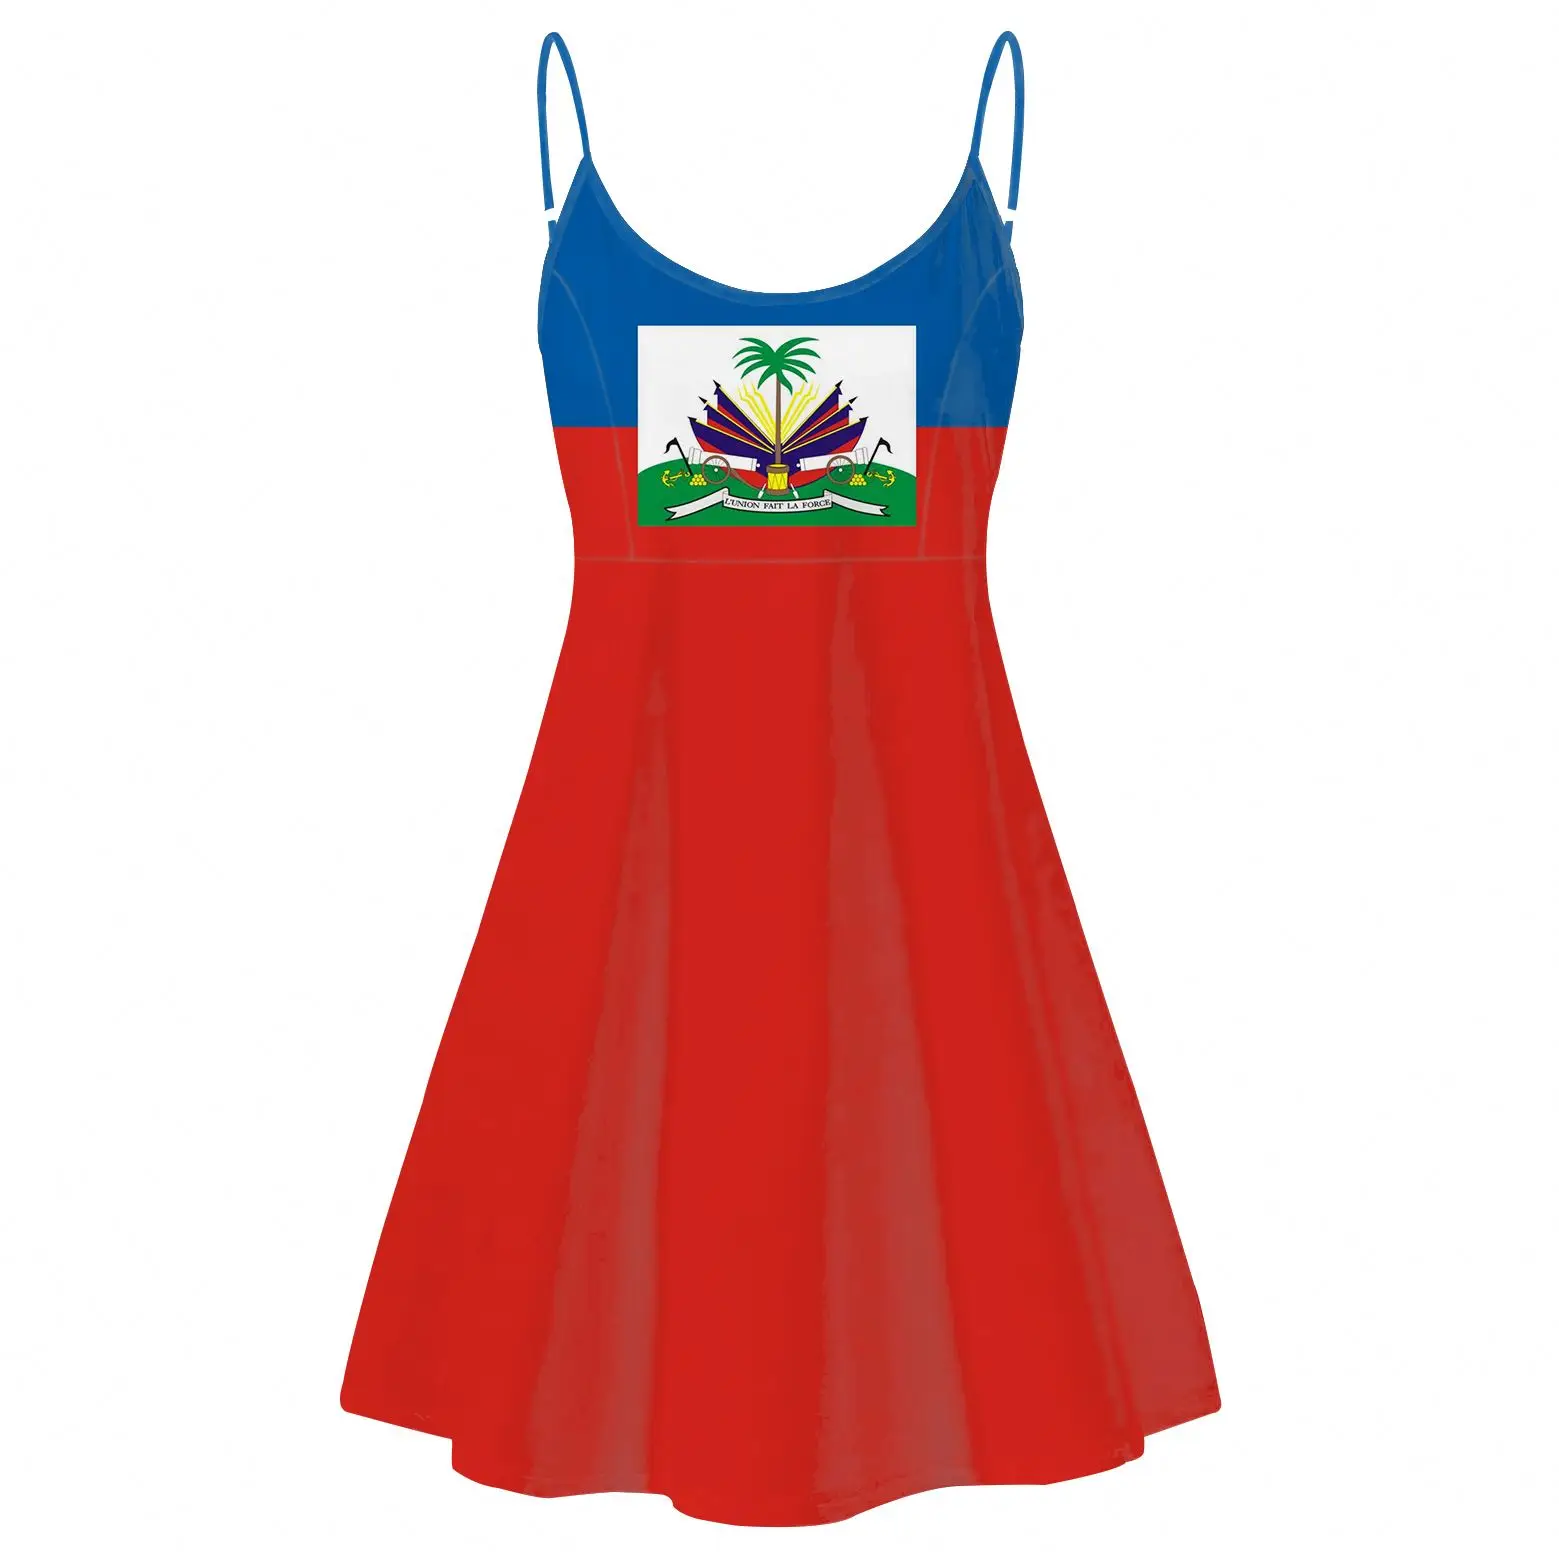 Flagge Von Haiti Print Damen Sleeveless Slip Kleider Rot Und Blau Splice Design Damen Backless Sling Kleid Heisser Sommer Slip Rocke Buy Haiti Flagge Drucken Weibliche Slip Kleider Haiti Frauen Schlinge Kleid Haiti